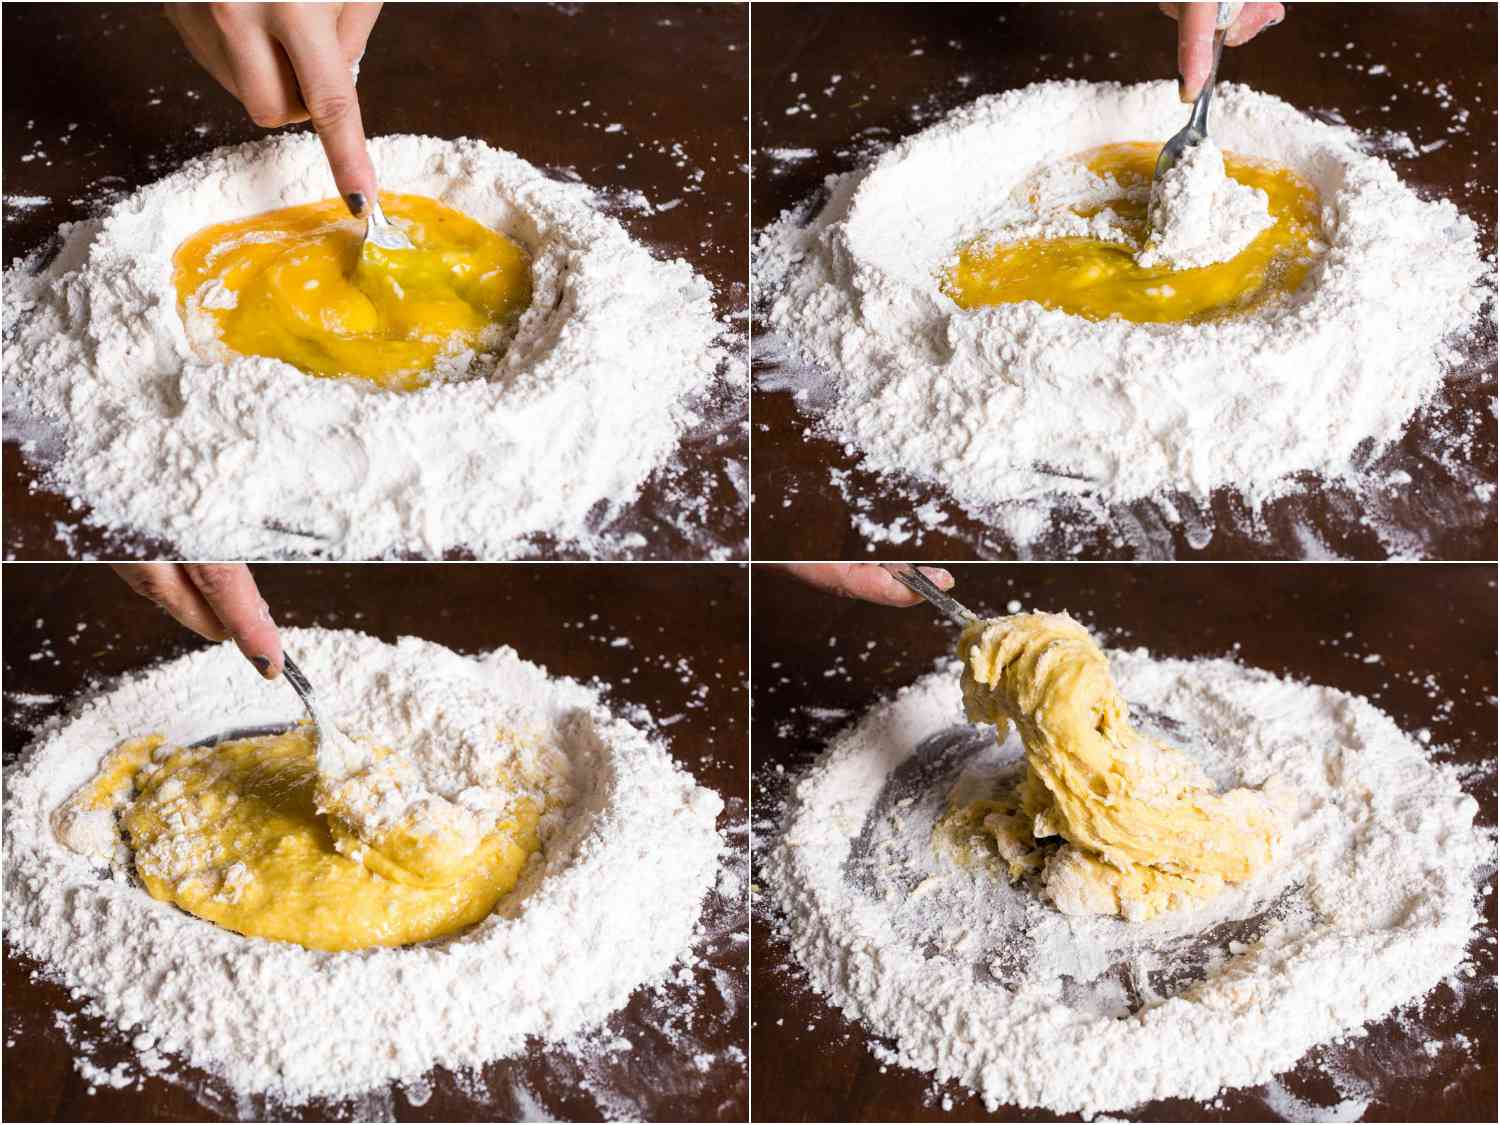 制作过程拼贴:打一孔面粉，加入全鸡蛋和蛋黄，用打蛋器打匀。